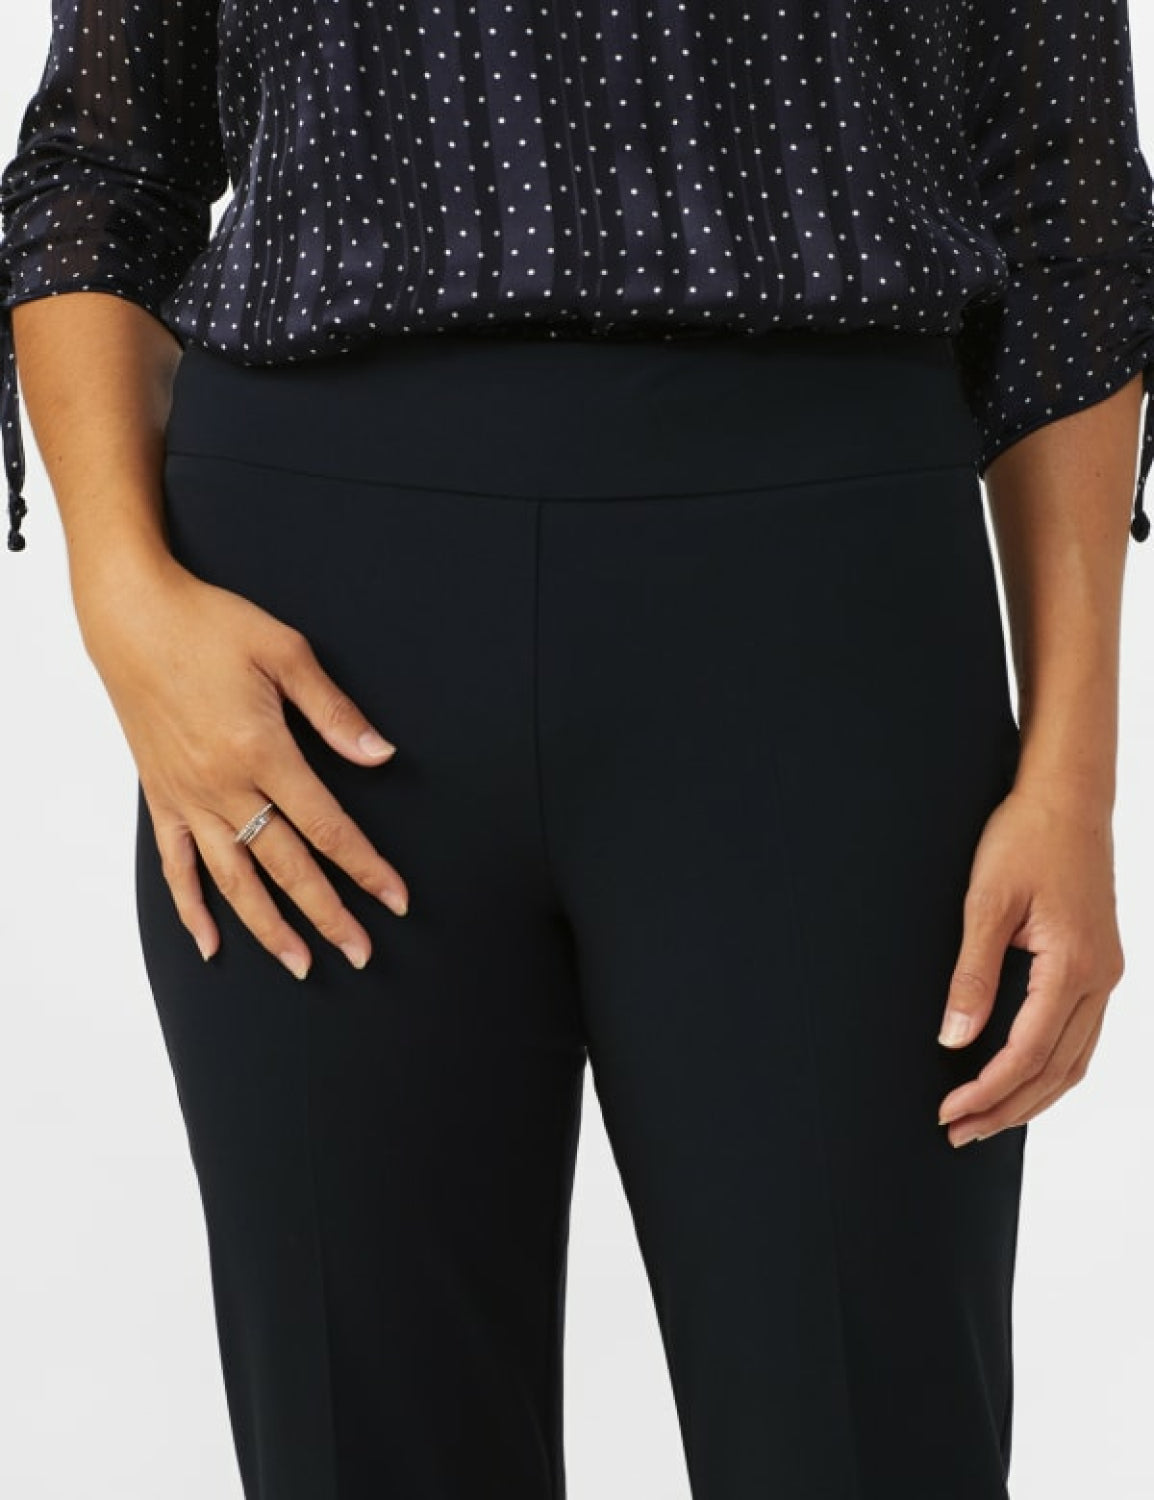 Pus Size Black Secret Agent Tummy Control Pants Pocket Rivets